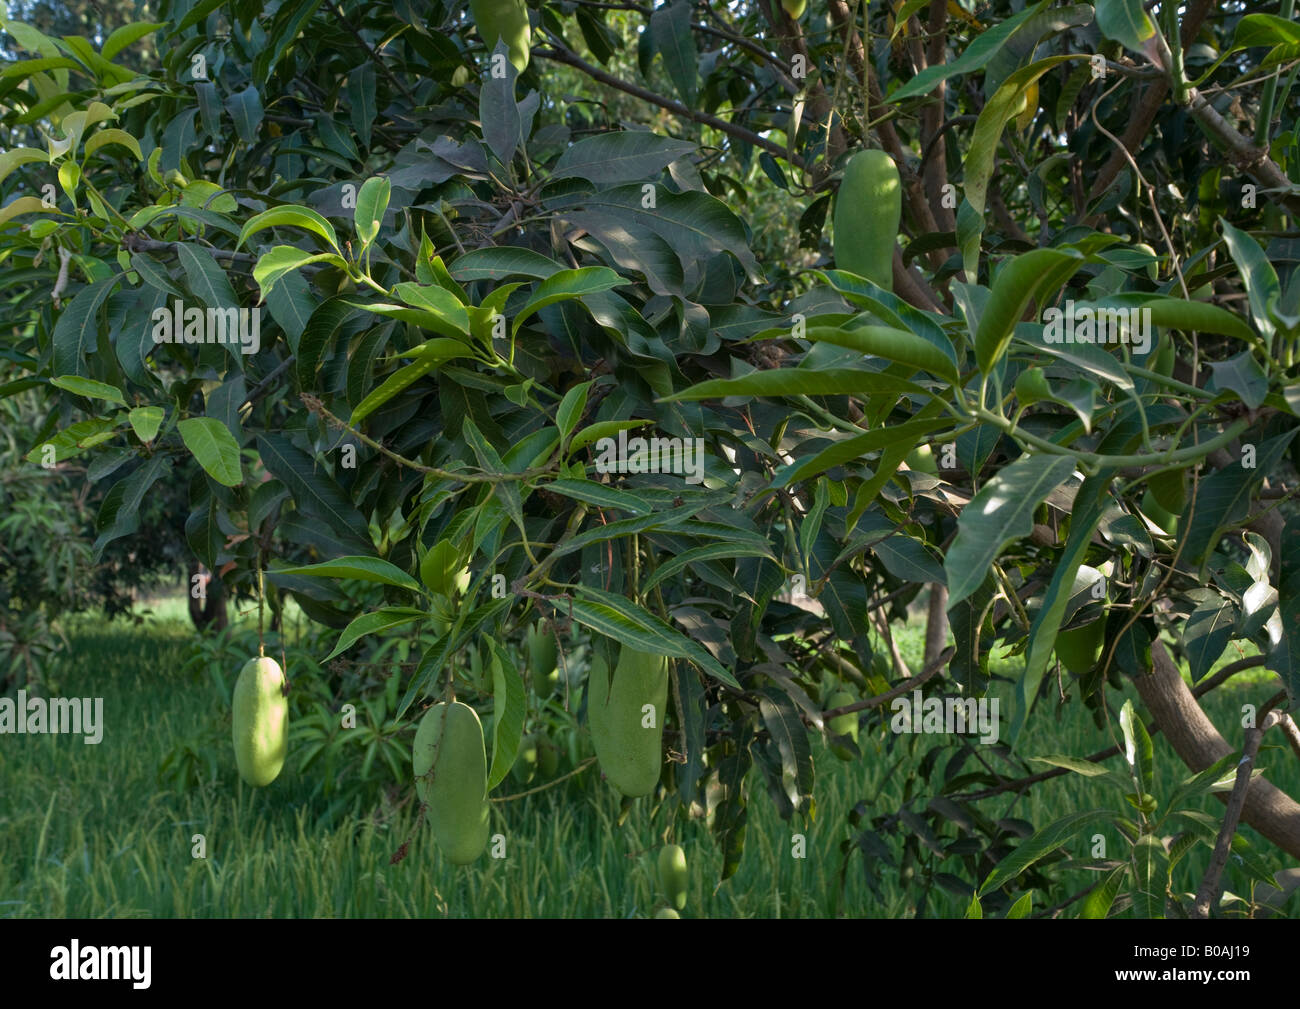 Mango-Bäume mit unreifen grünen gehäutet extra verlängerte "Dasheri" Vielzahl von Mangos mit Reis Plantage gewachsen, wie im April zu sehen. Stockfoto